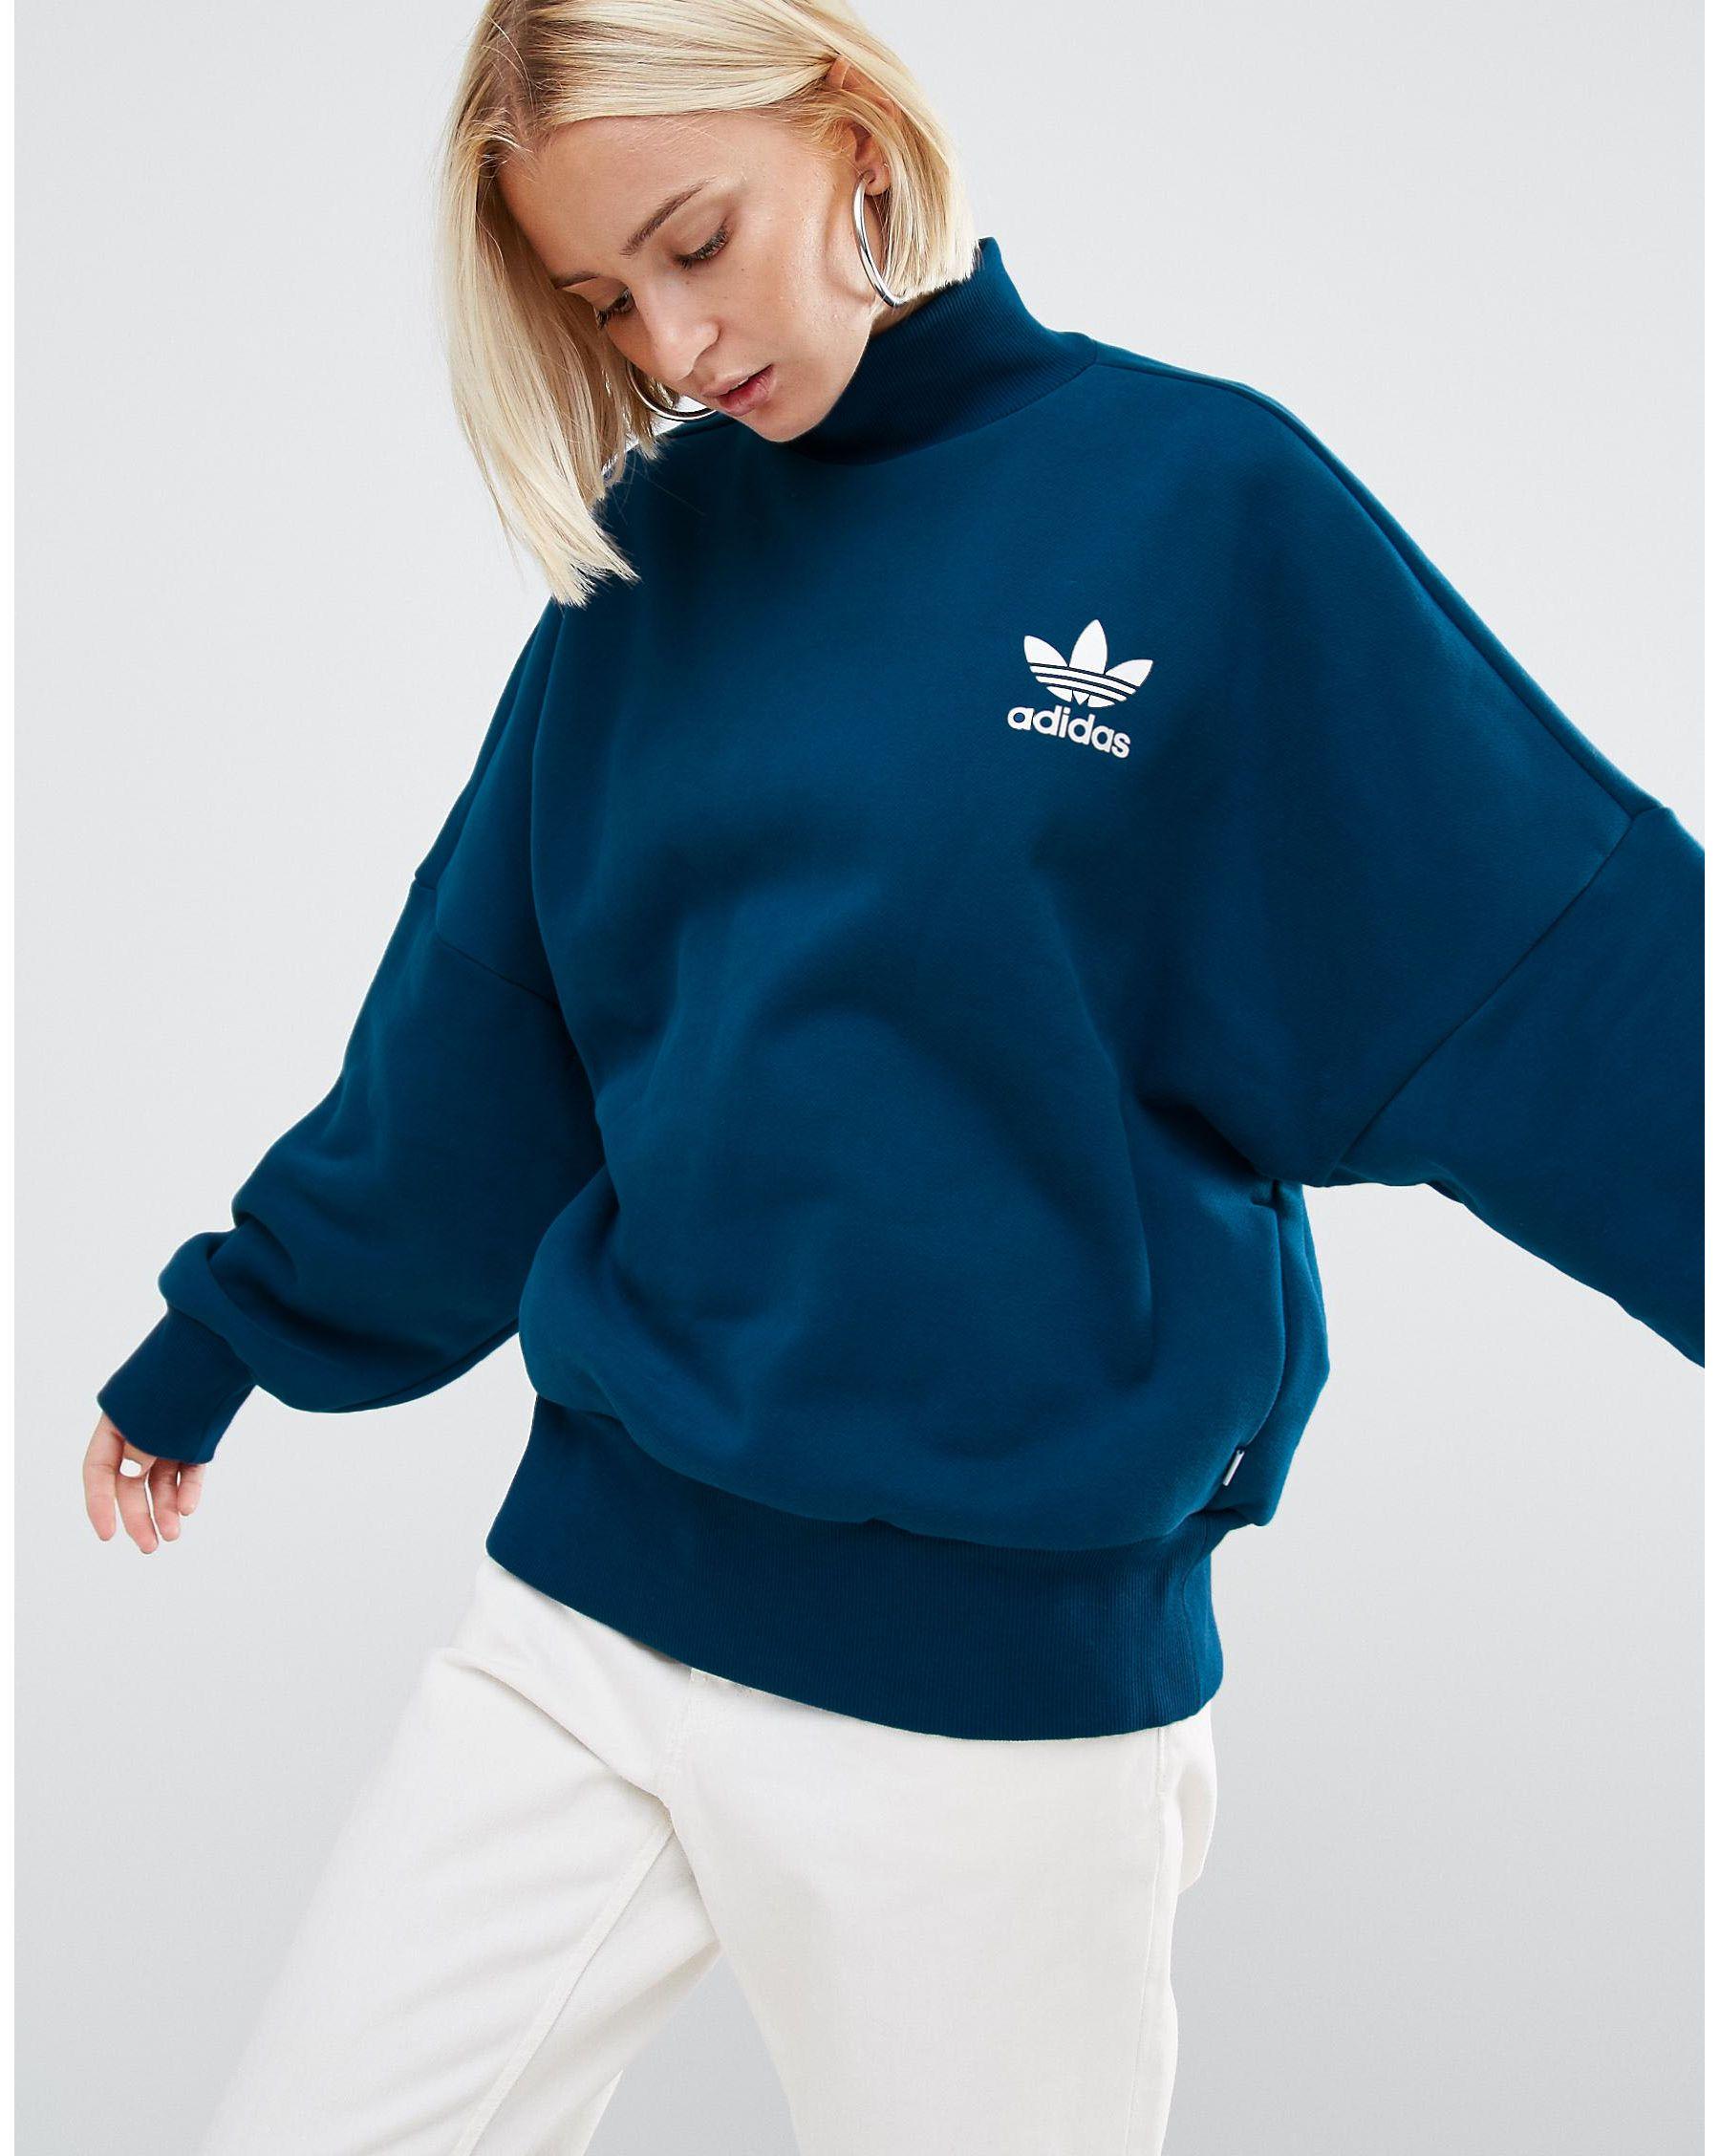 adidas Originals Cotton Originals High Neck Sweatshirt With Trefoil Logo in  Blue - Lyst